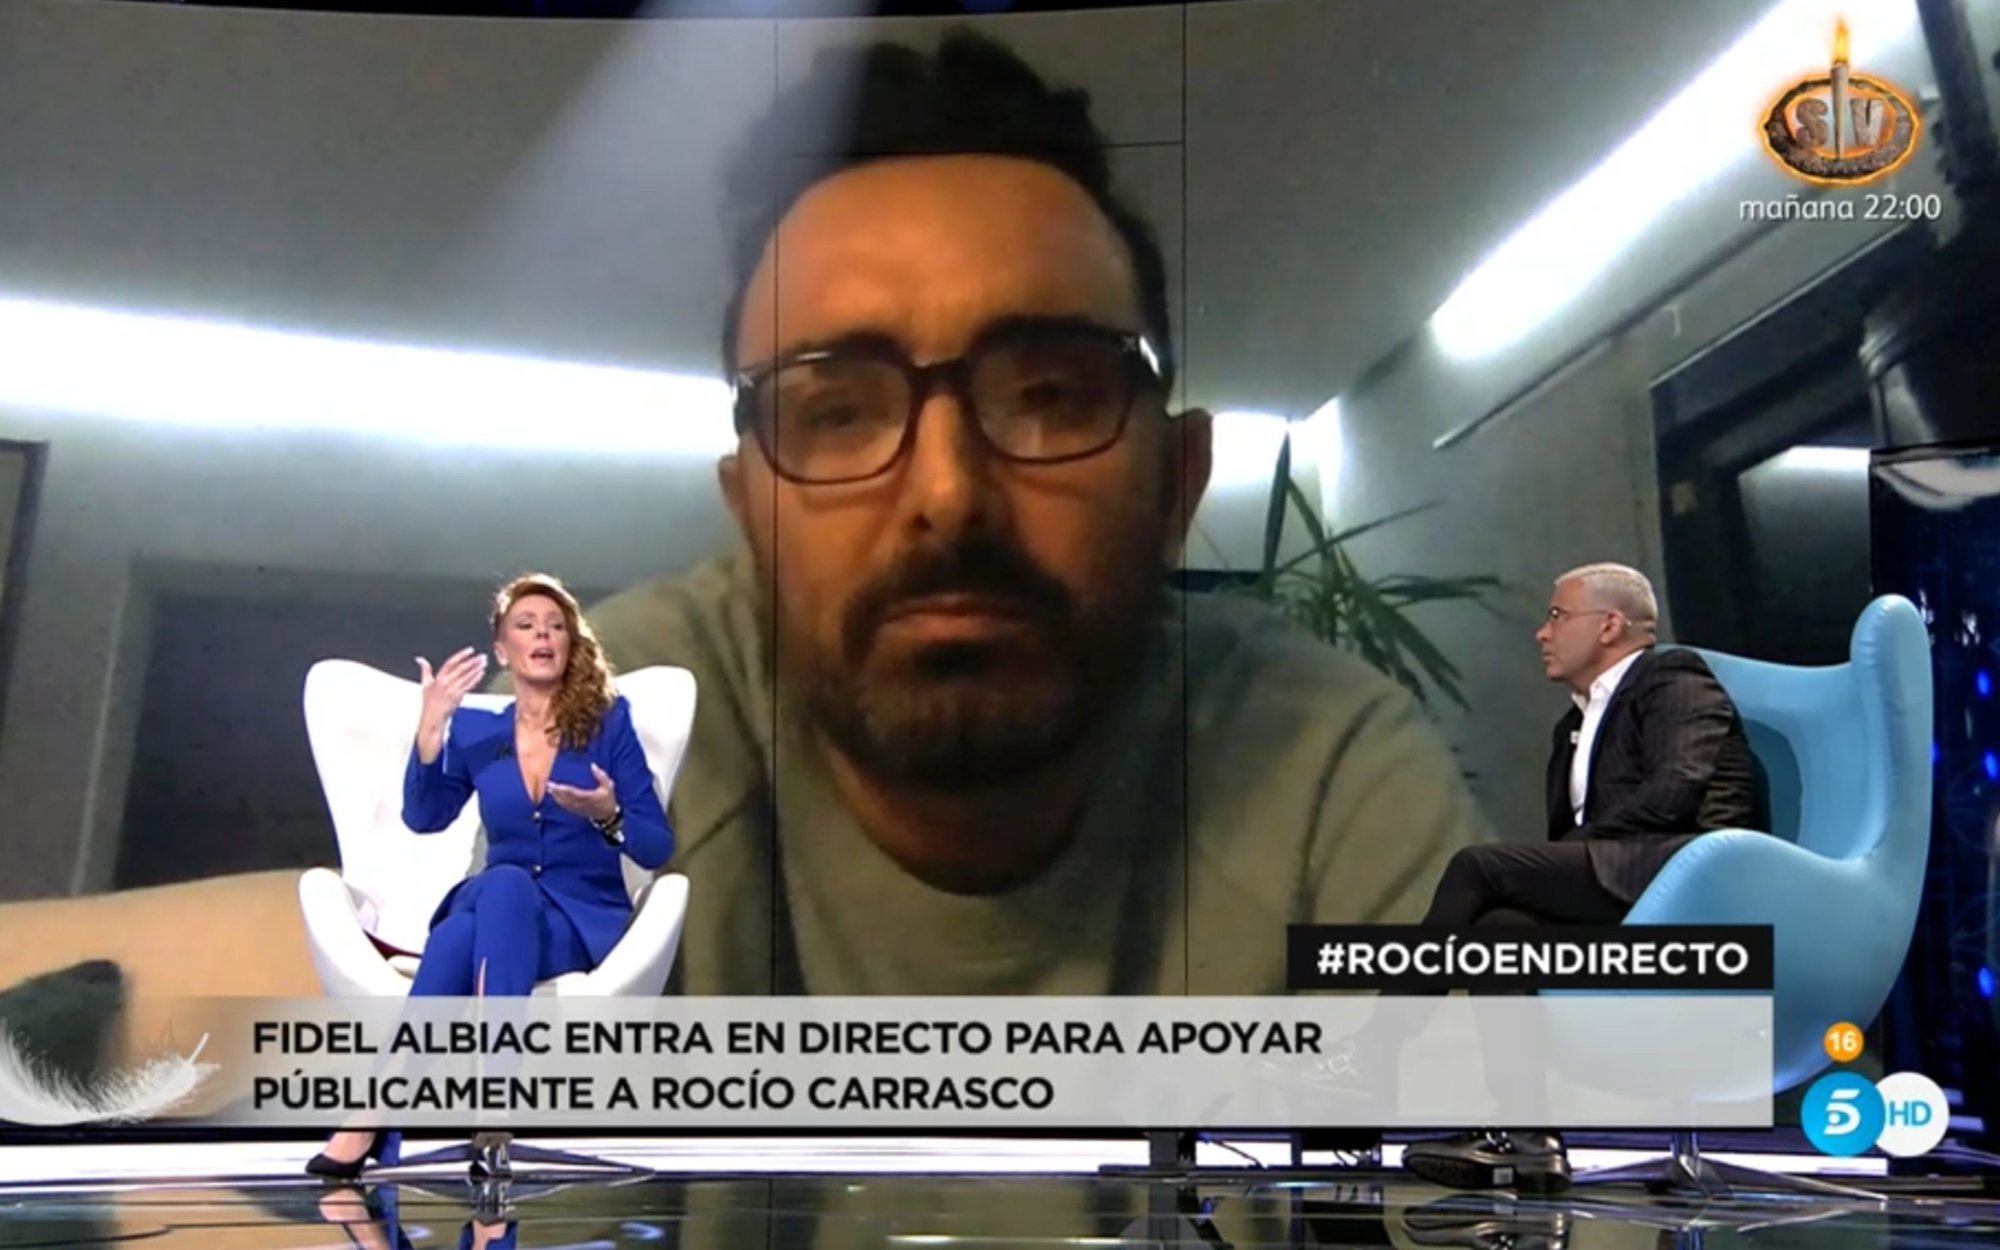 El debut televisivo de Fidel Albiac en la entrevista de Rocío Carrasco: "Me han señalado desde el minuto cero"